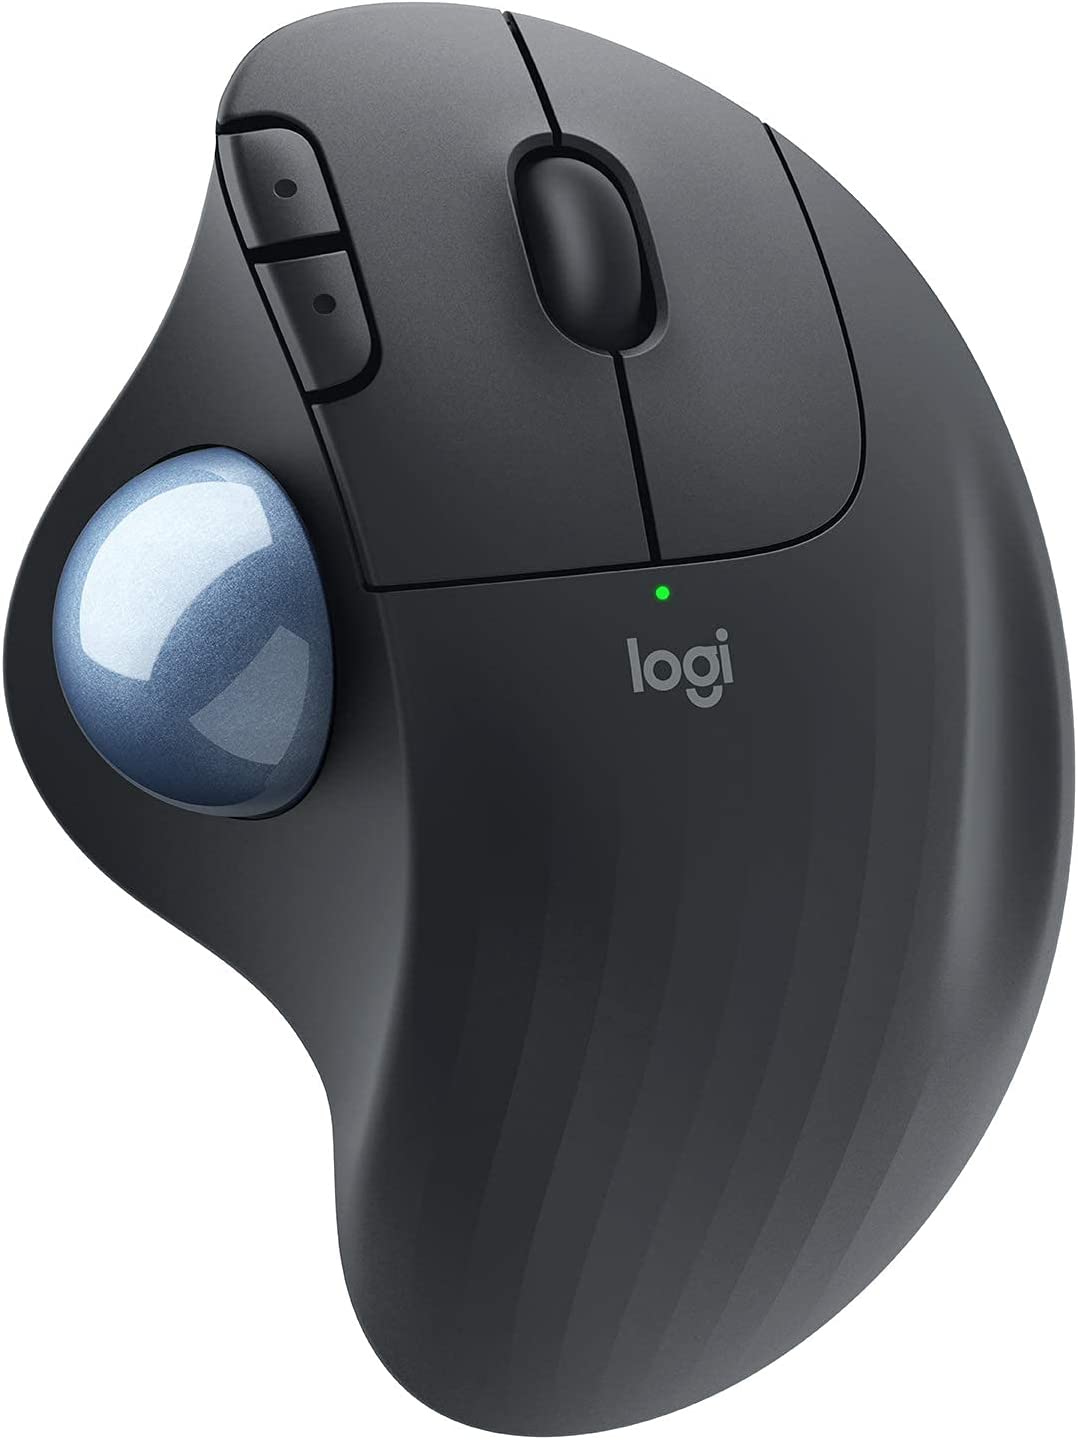 Logitech Ergo M575 무선 트랙볼 마우스, 간편한 엄지손가락 제어, 정밀하고 부드러운 추적, 인체공학적 편안한 디자인, Windows/Mac, 블루투스, USB - 그래파이트(갱신)